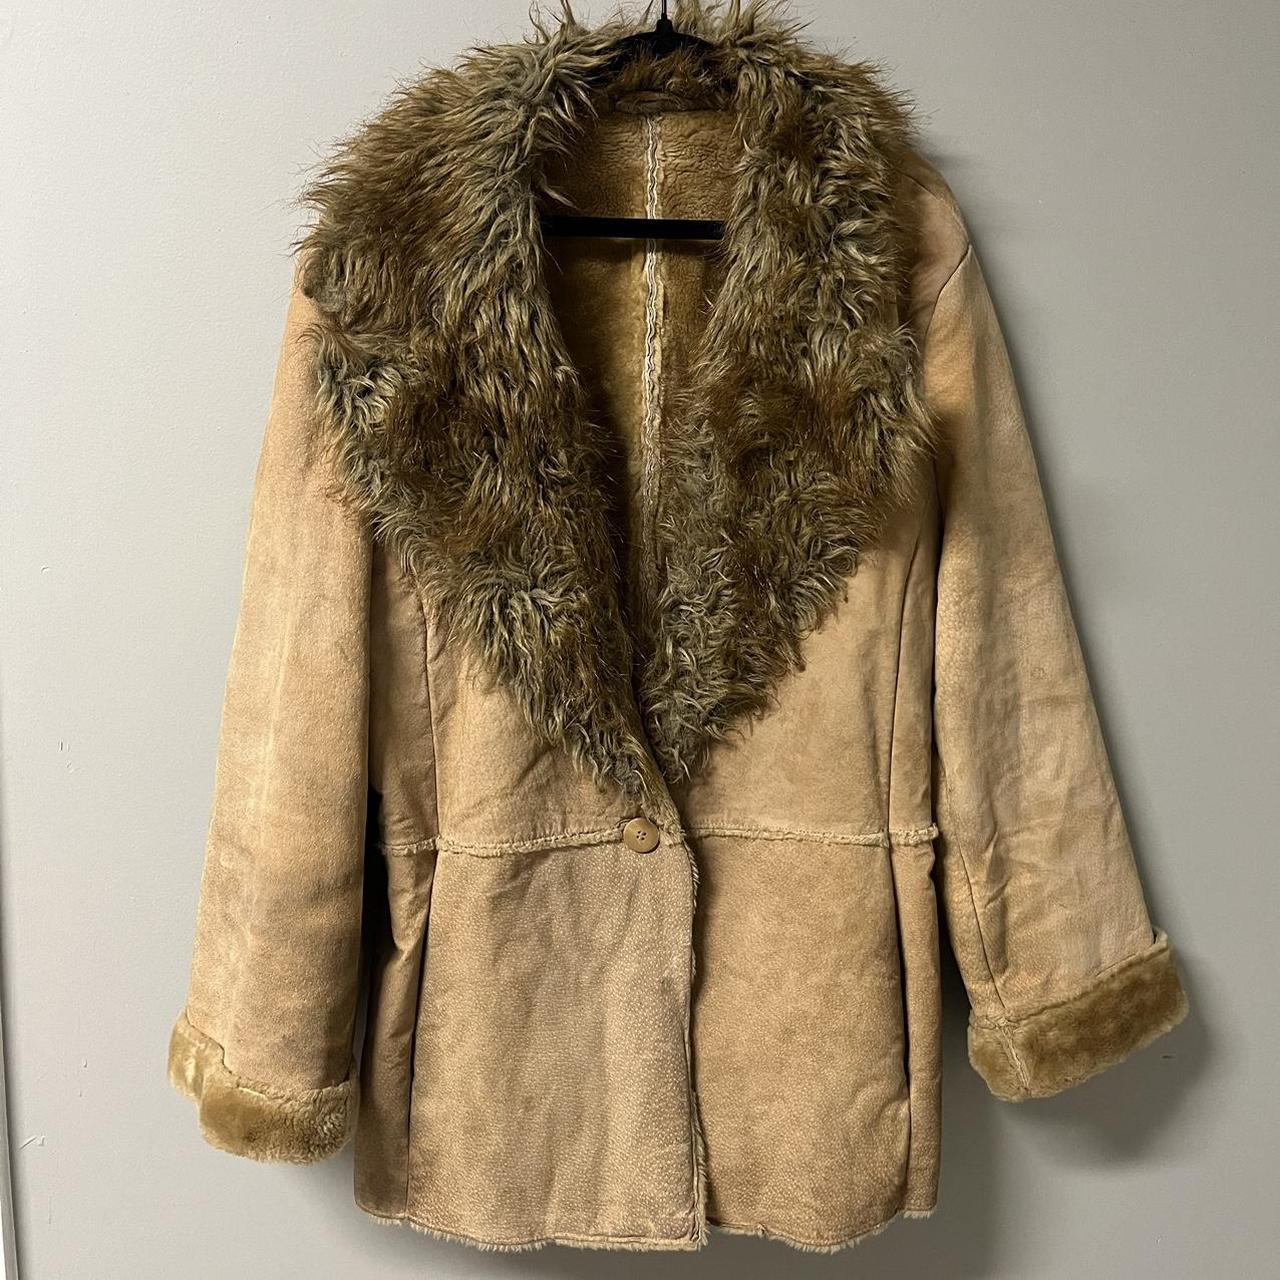 Vintage St. Johns Bay Suede Leather Shaggy Afghan... - Depop